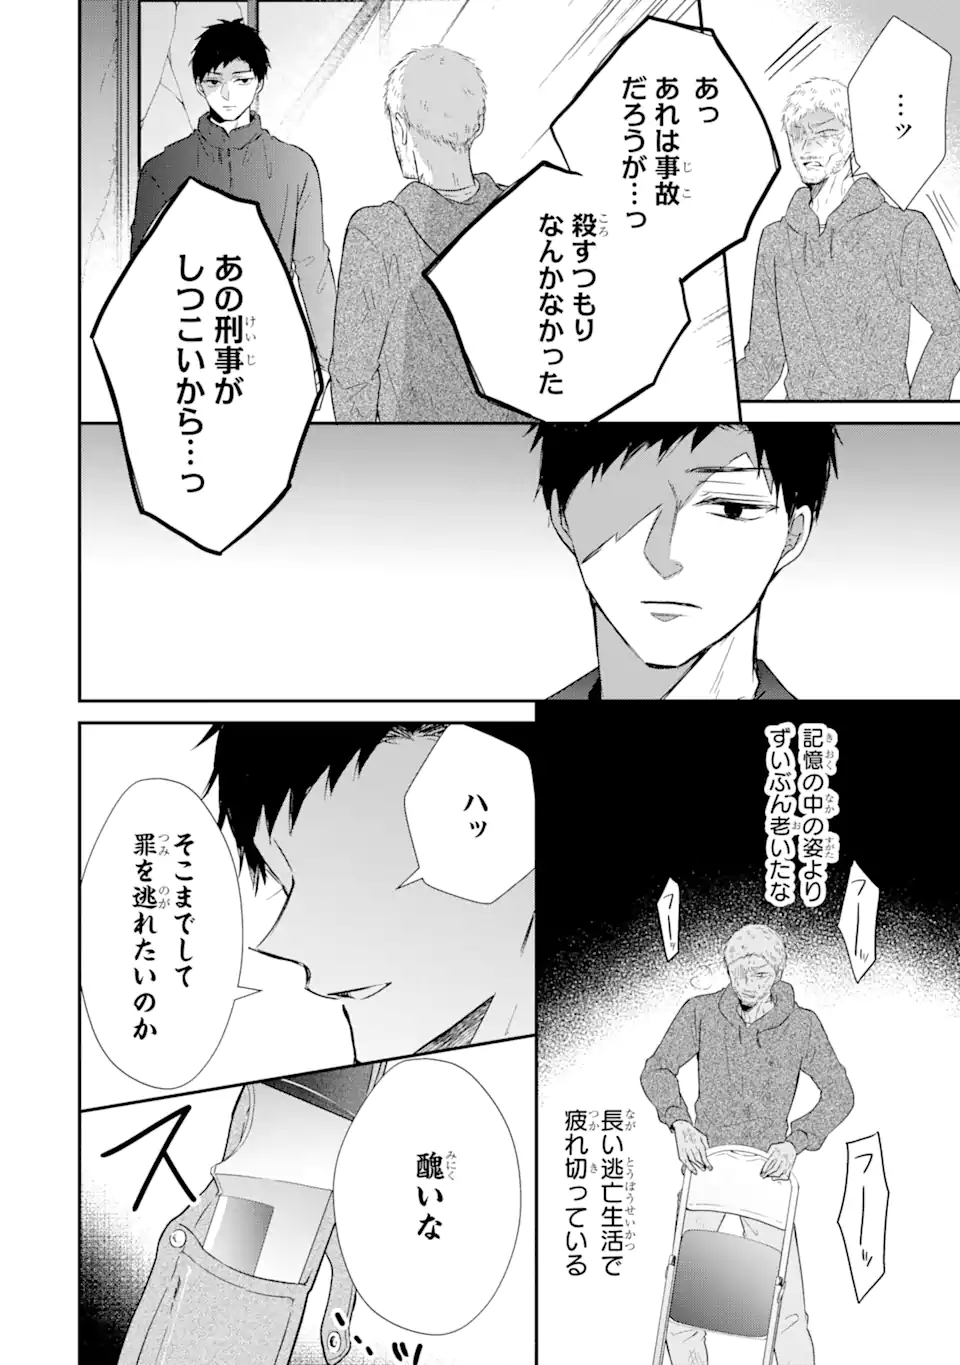 Keisatsu 3 Kyoudai wa Furyou Shoujo ni Amasugiru - Chapter 17.3 - Page 6